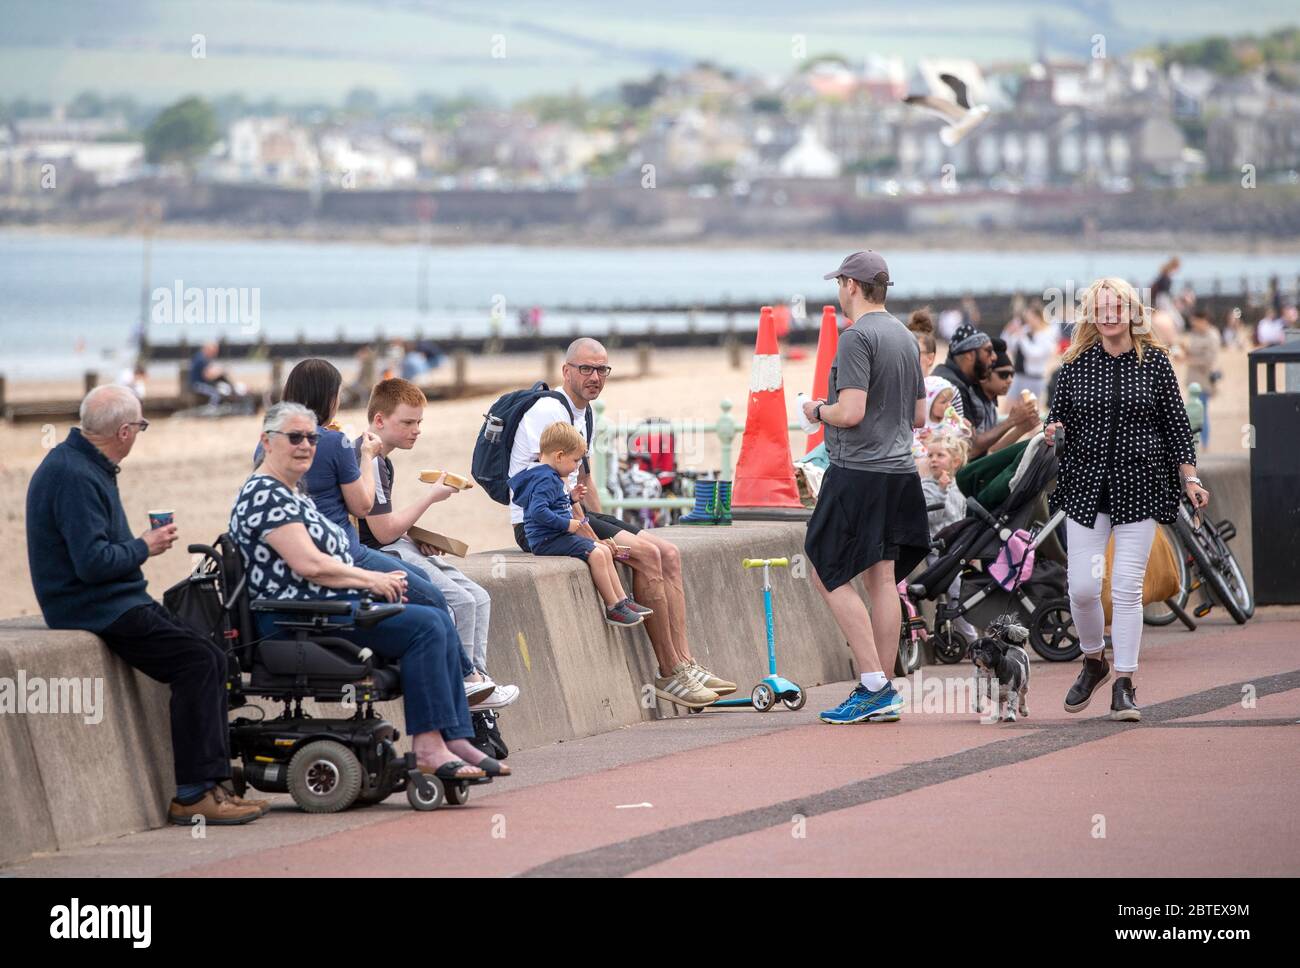 Les gens apprécient le temps chaud sur Portobello Beach Promenade, Édimbourg, tandis que les gens se dirigent vers les parcs et les plages avec des mesures de confinement apaisées. Banque D'Images